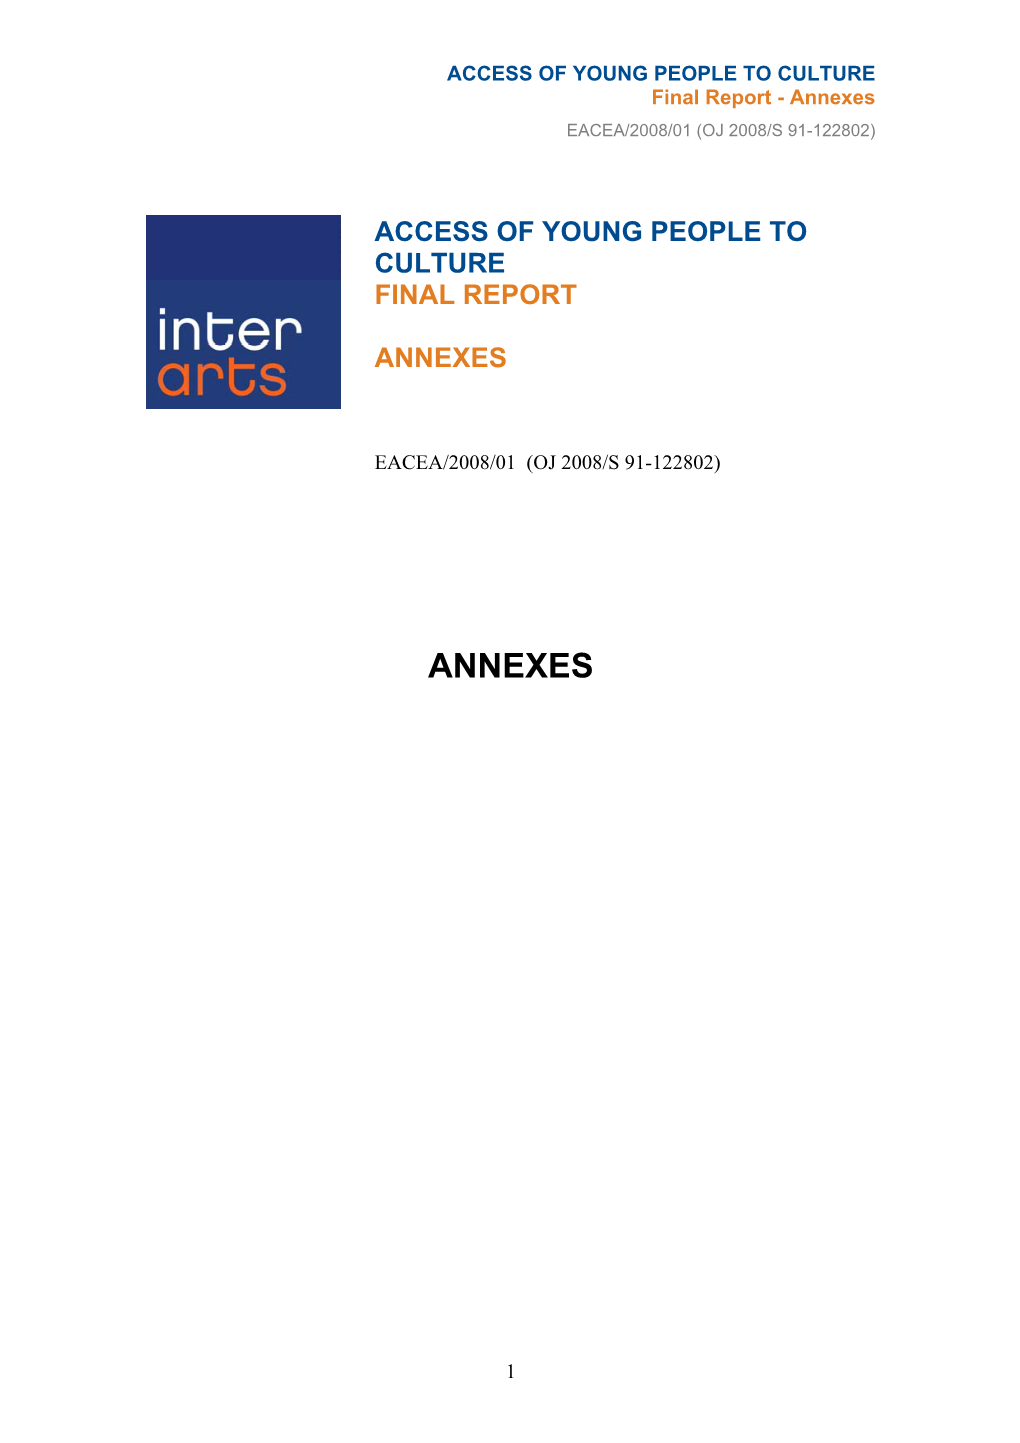 Annexes EACEA/2008/01 (OJ 2008/S 91-122802)